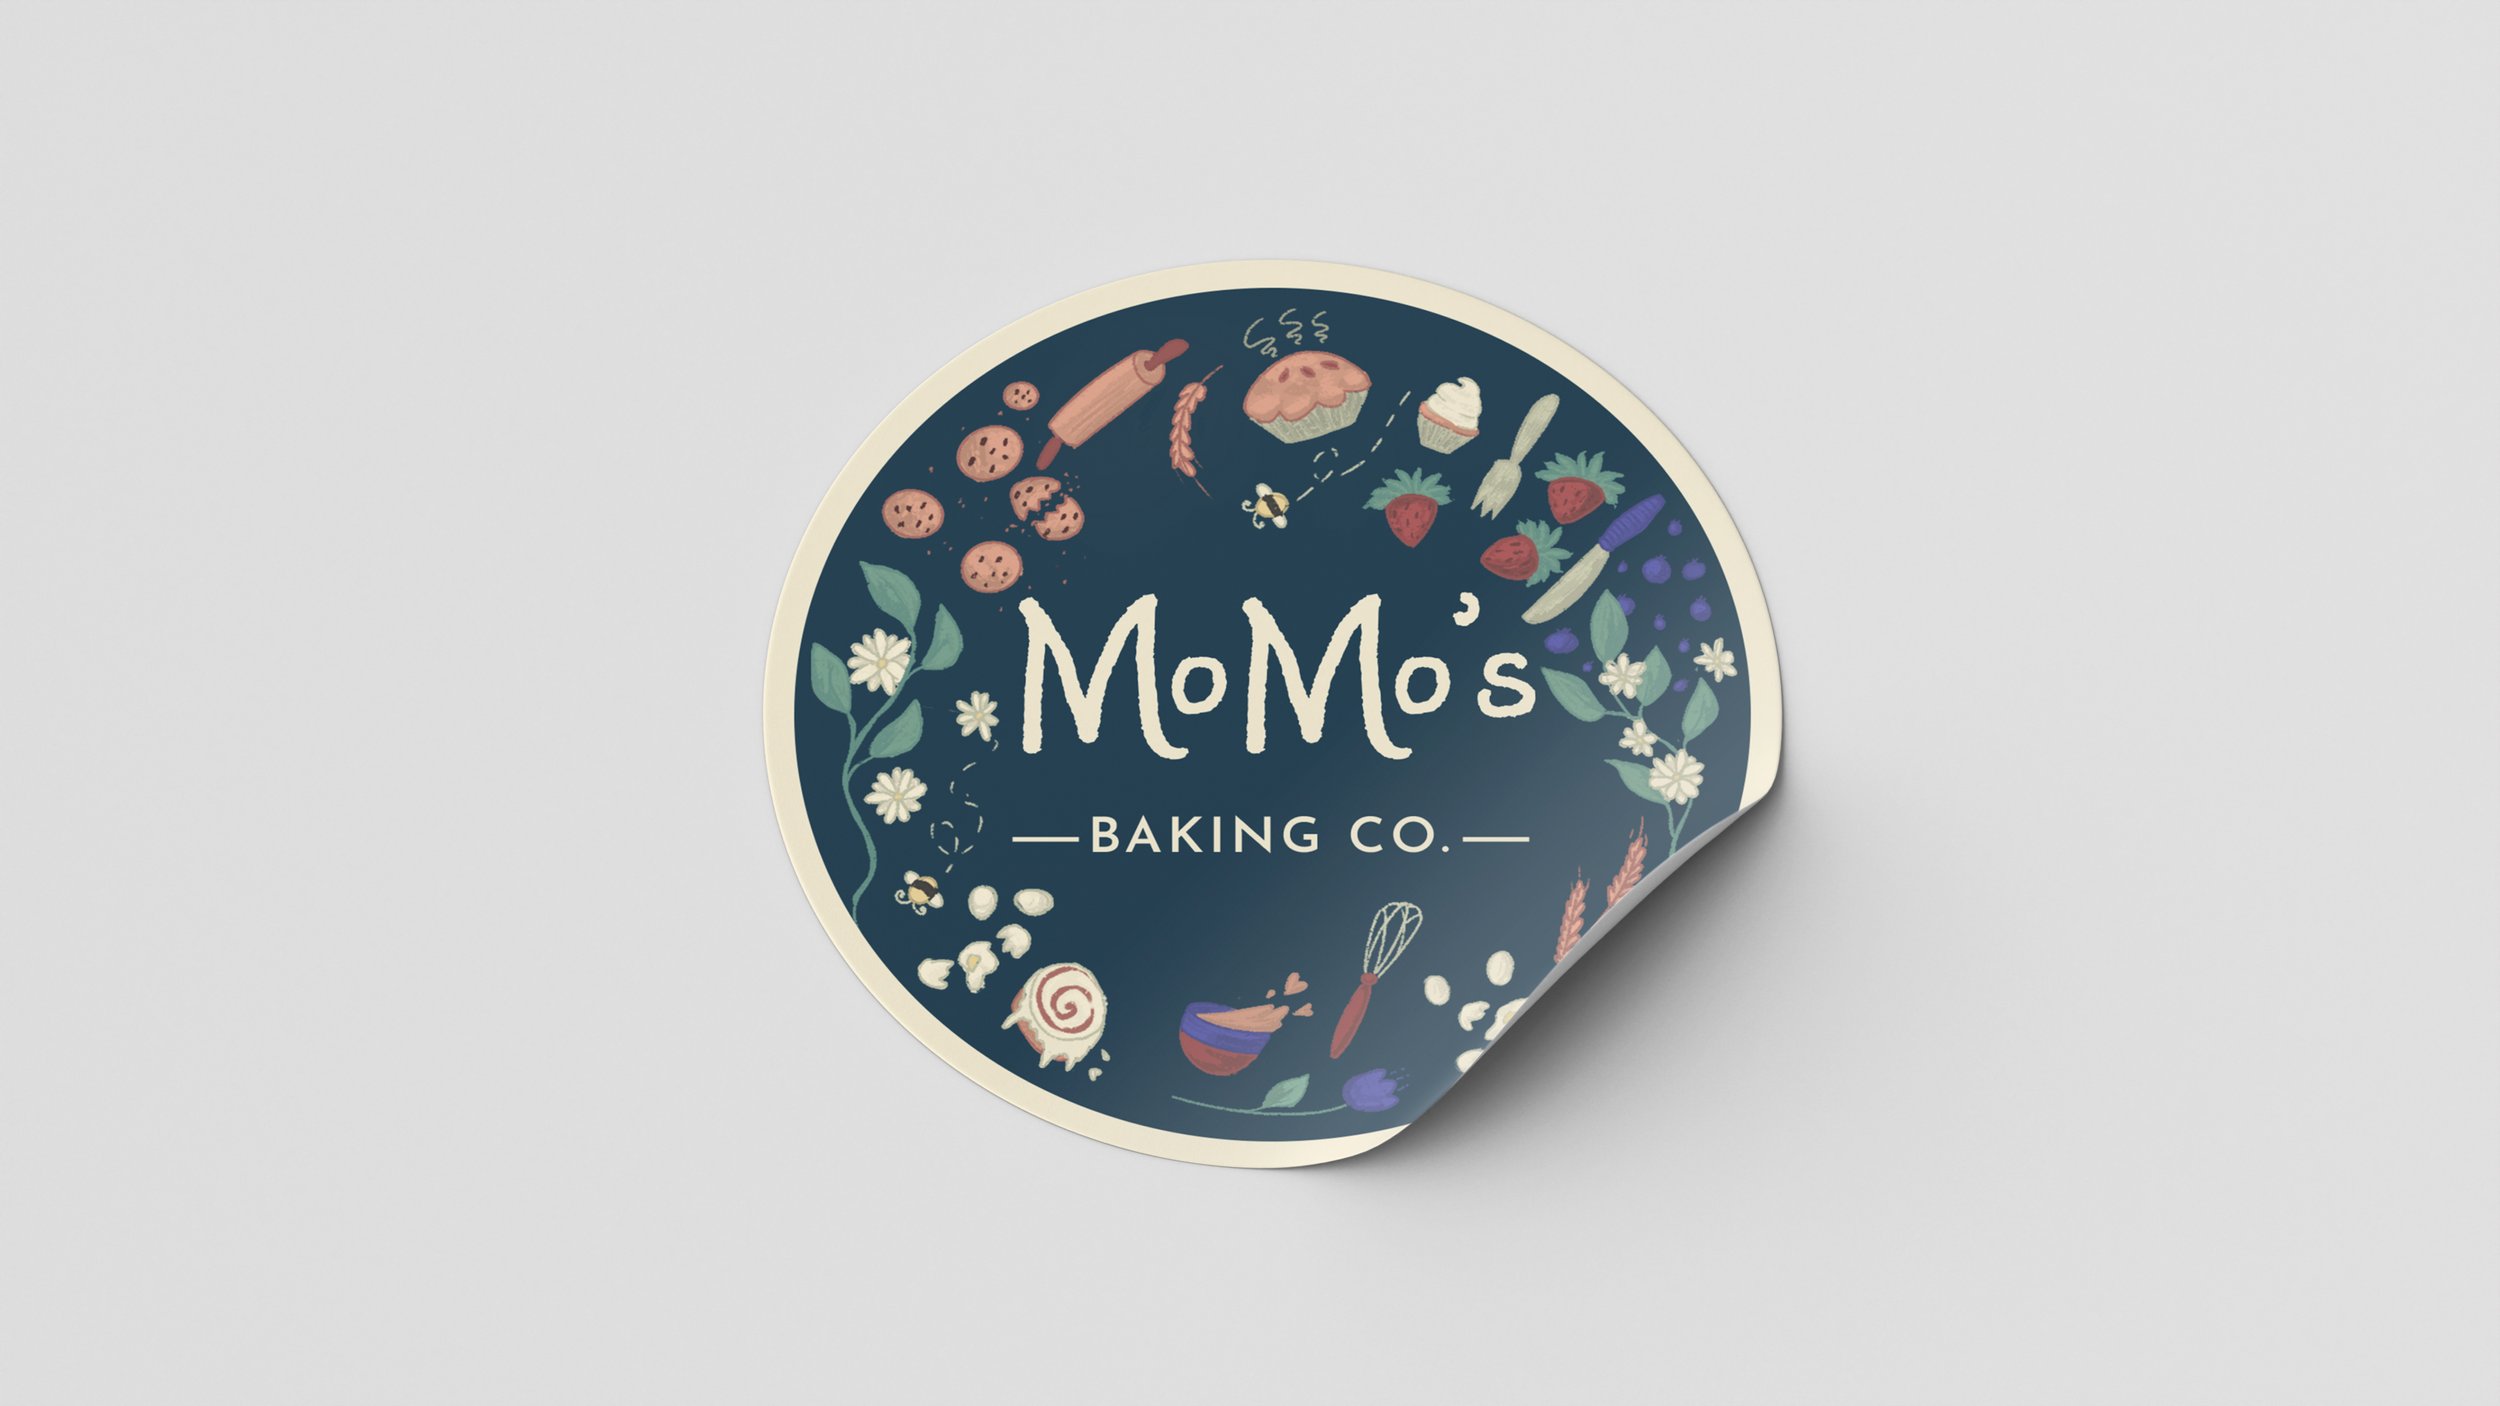 momo's baking co.